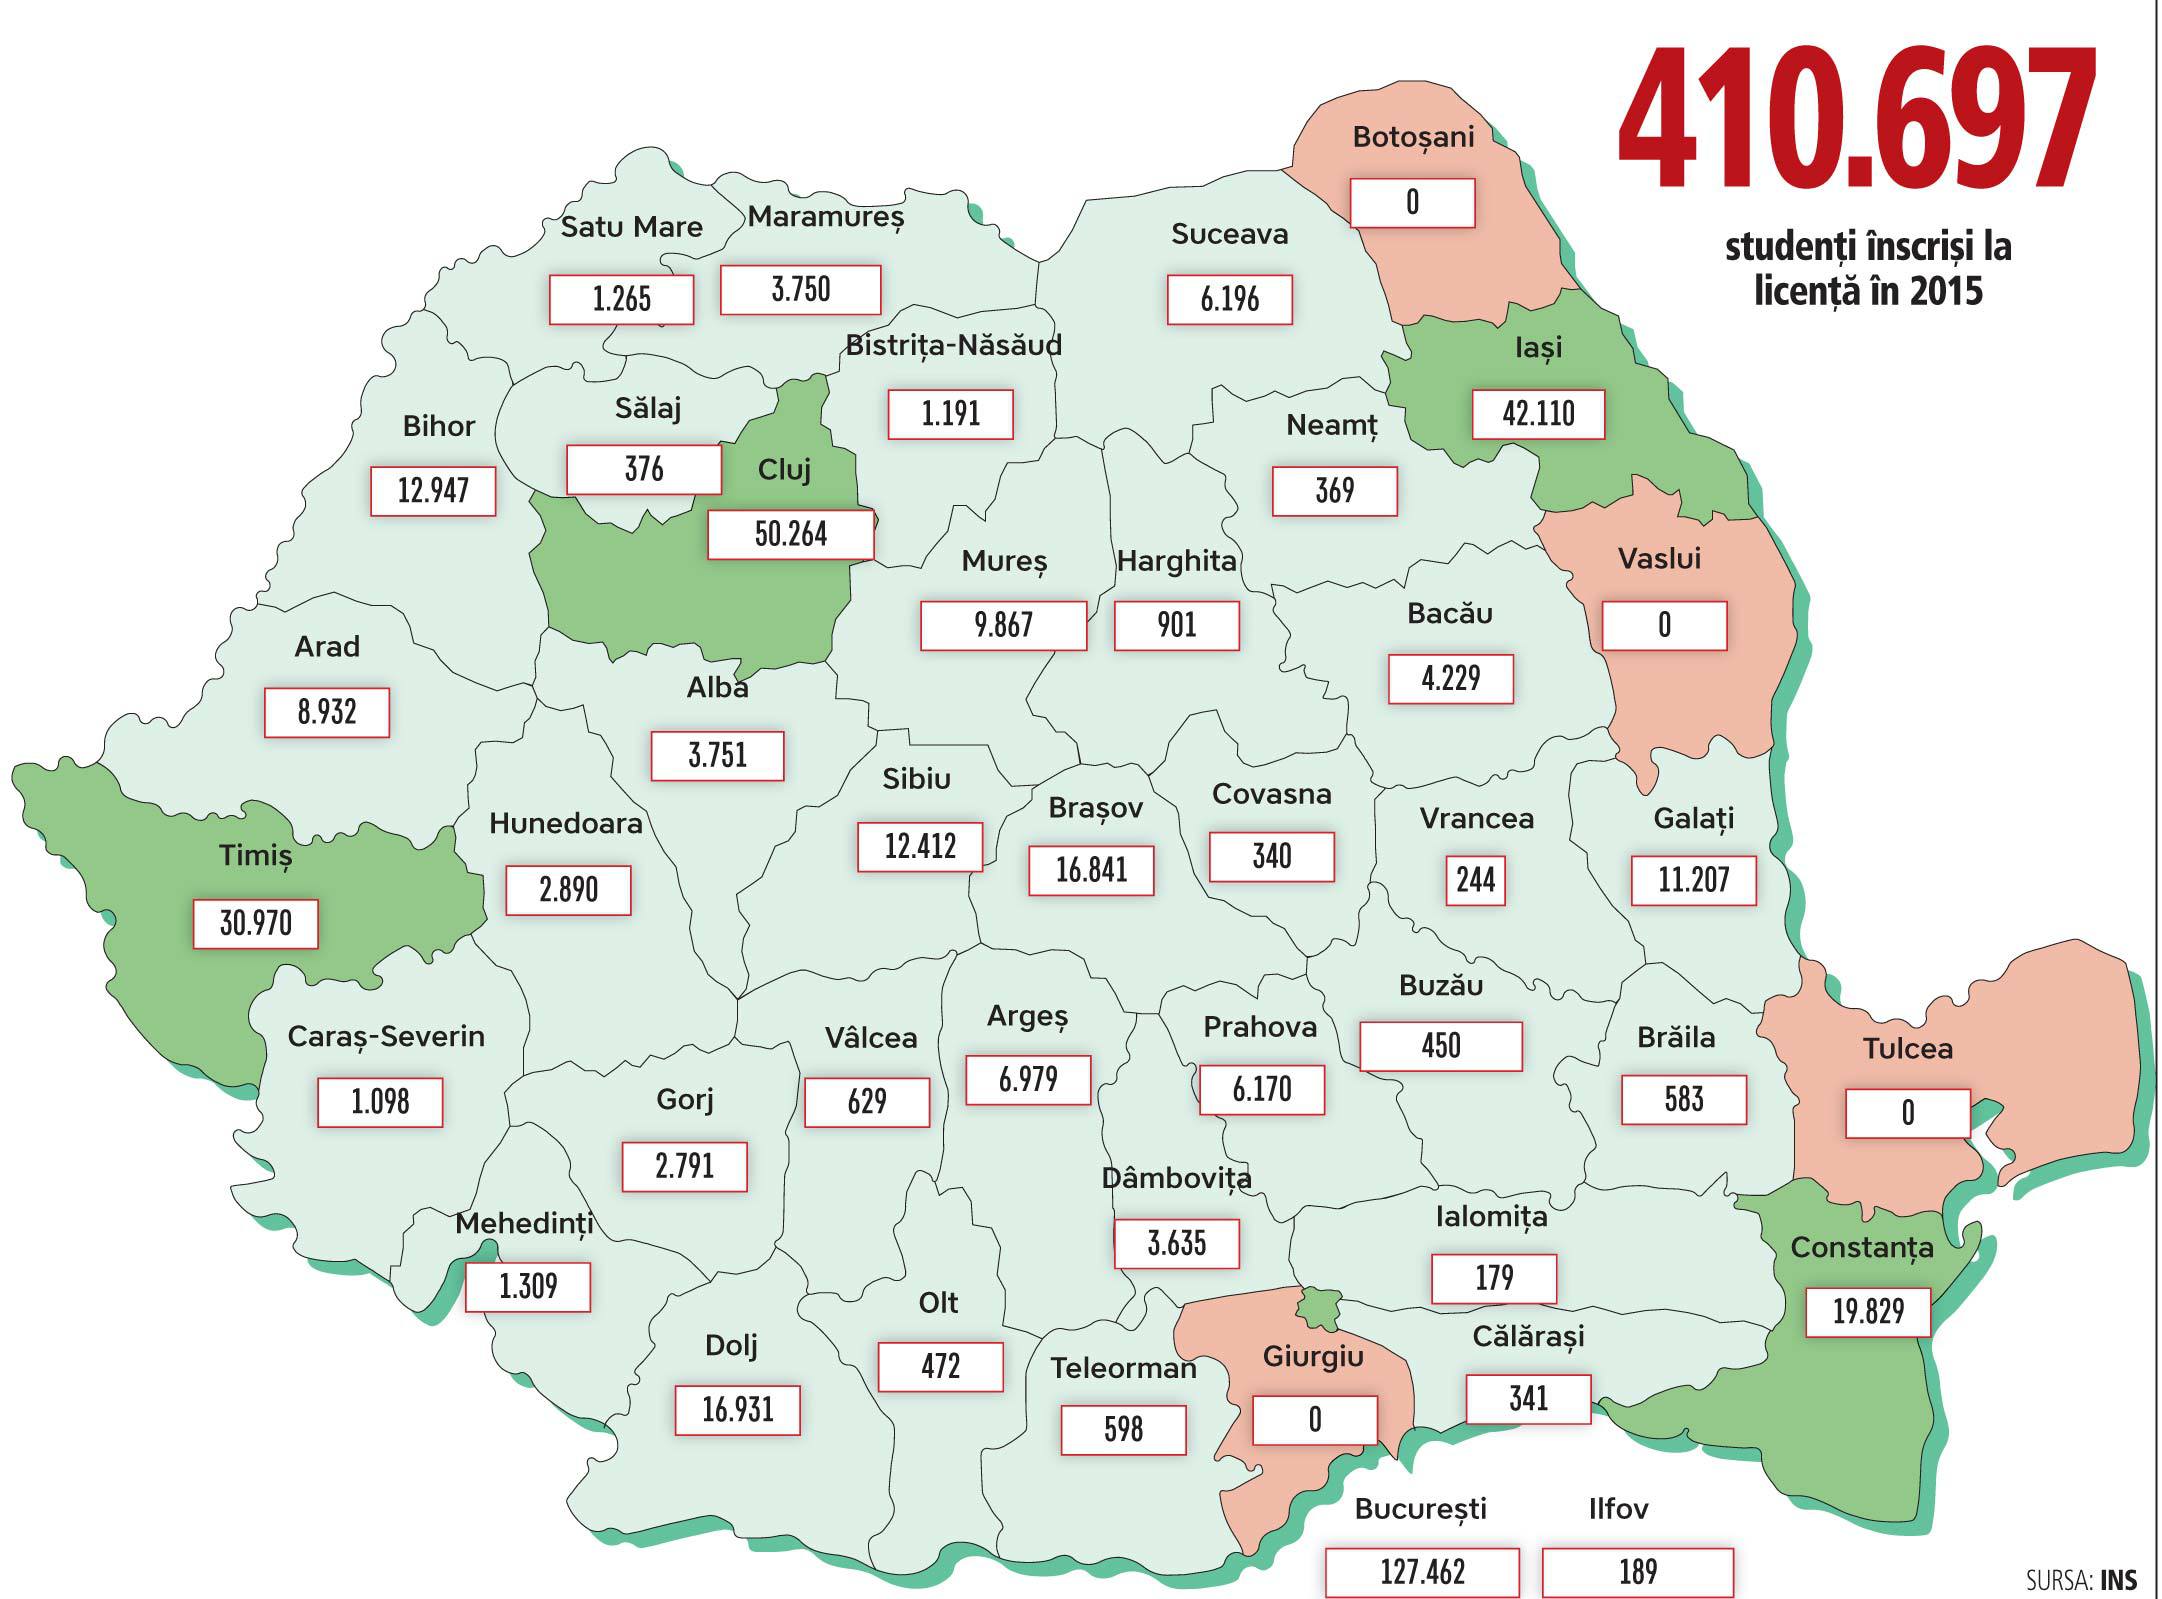 Harta studenţilor din România: centrele universitare au atras cei mai mulţi investitori. Mai bine de 50% dintre studenţii români învaţă în doar trei oraşe din România